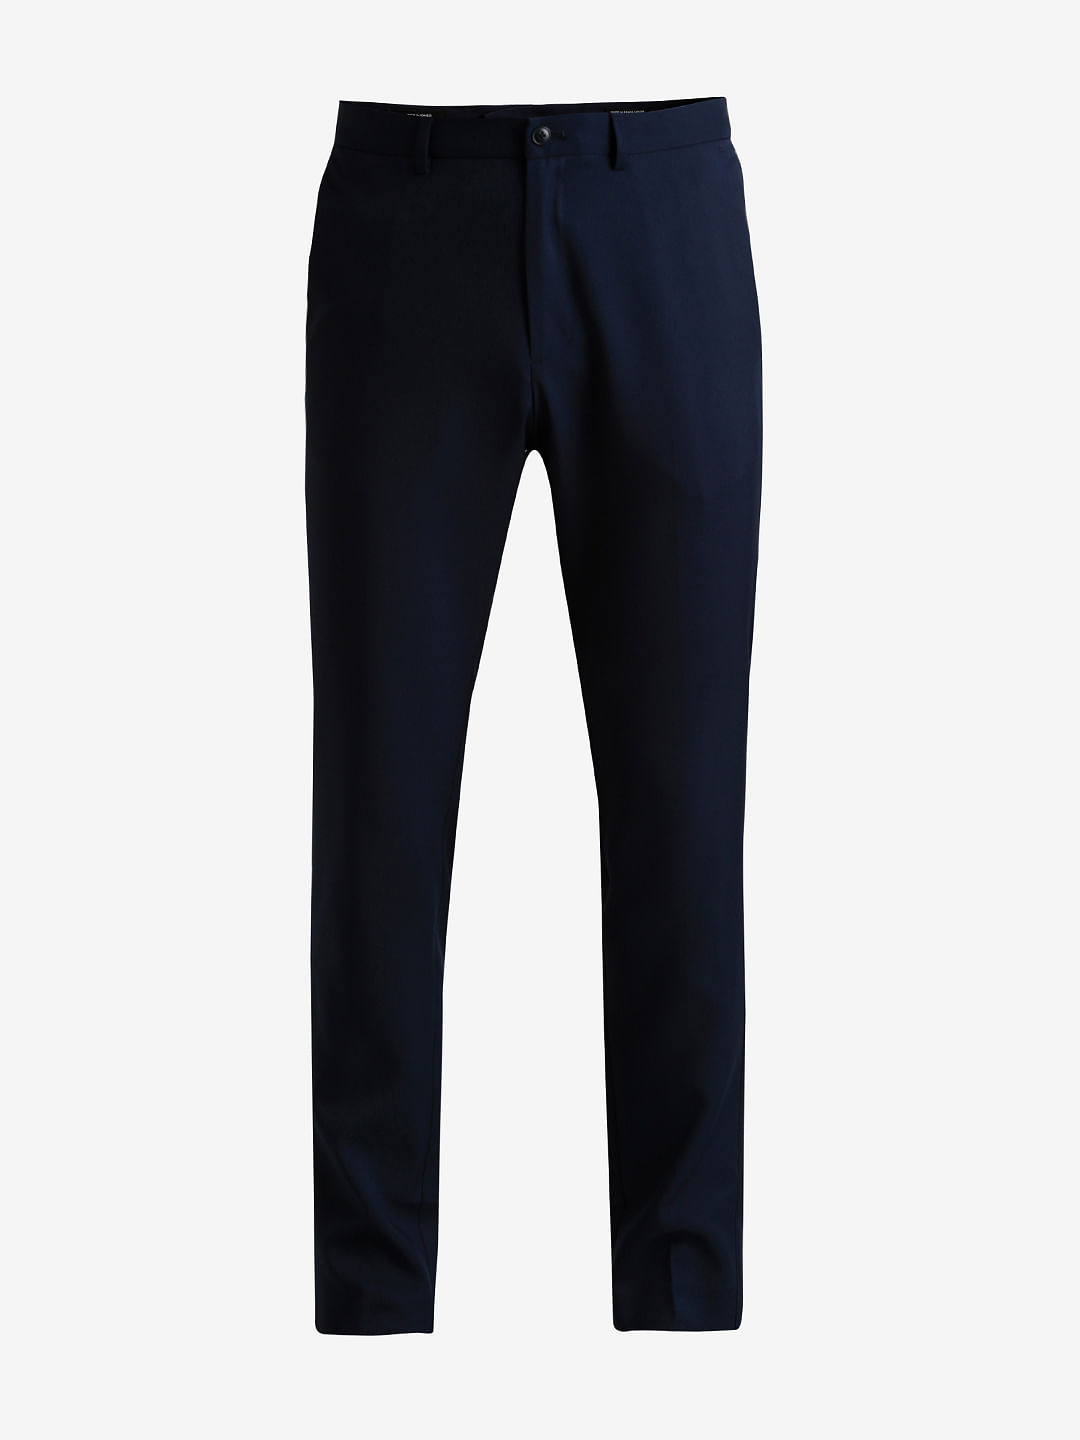 Theory Mayer New Tailor 2 Suit Pant | Men's Trouser | A.K. Rikk's